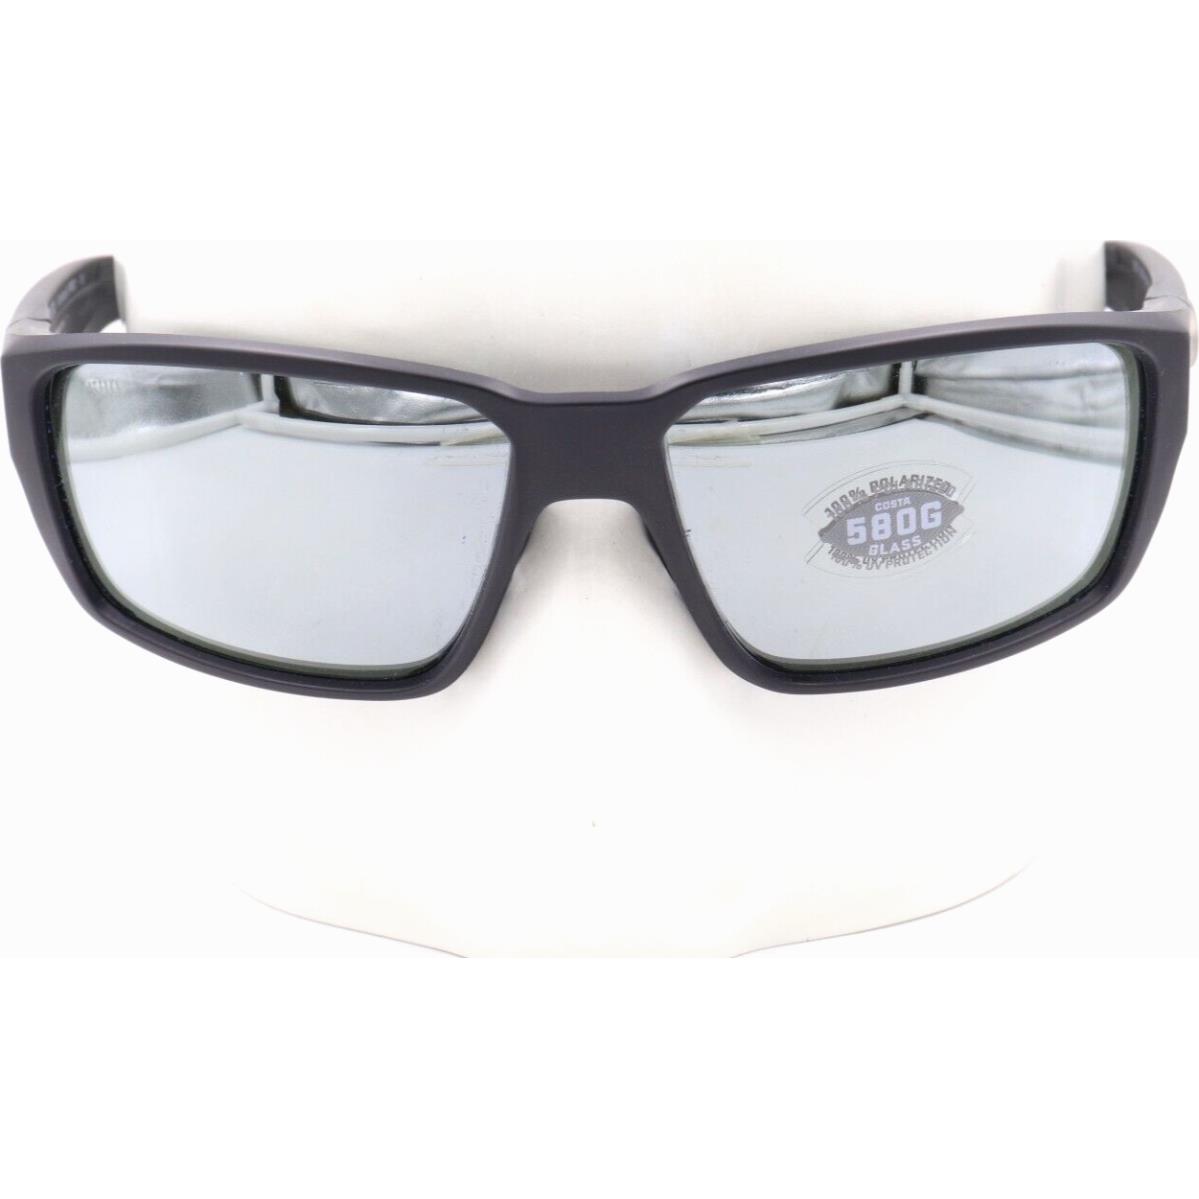 Costa Del Mar Fantail Pro Black Gray/silver 580G Sunglasses 06S9079 90790460